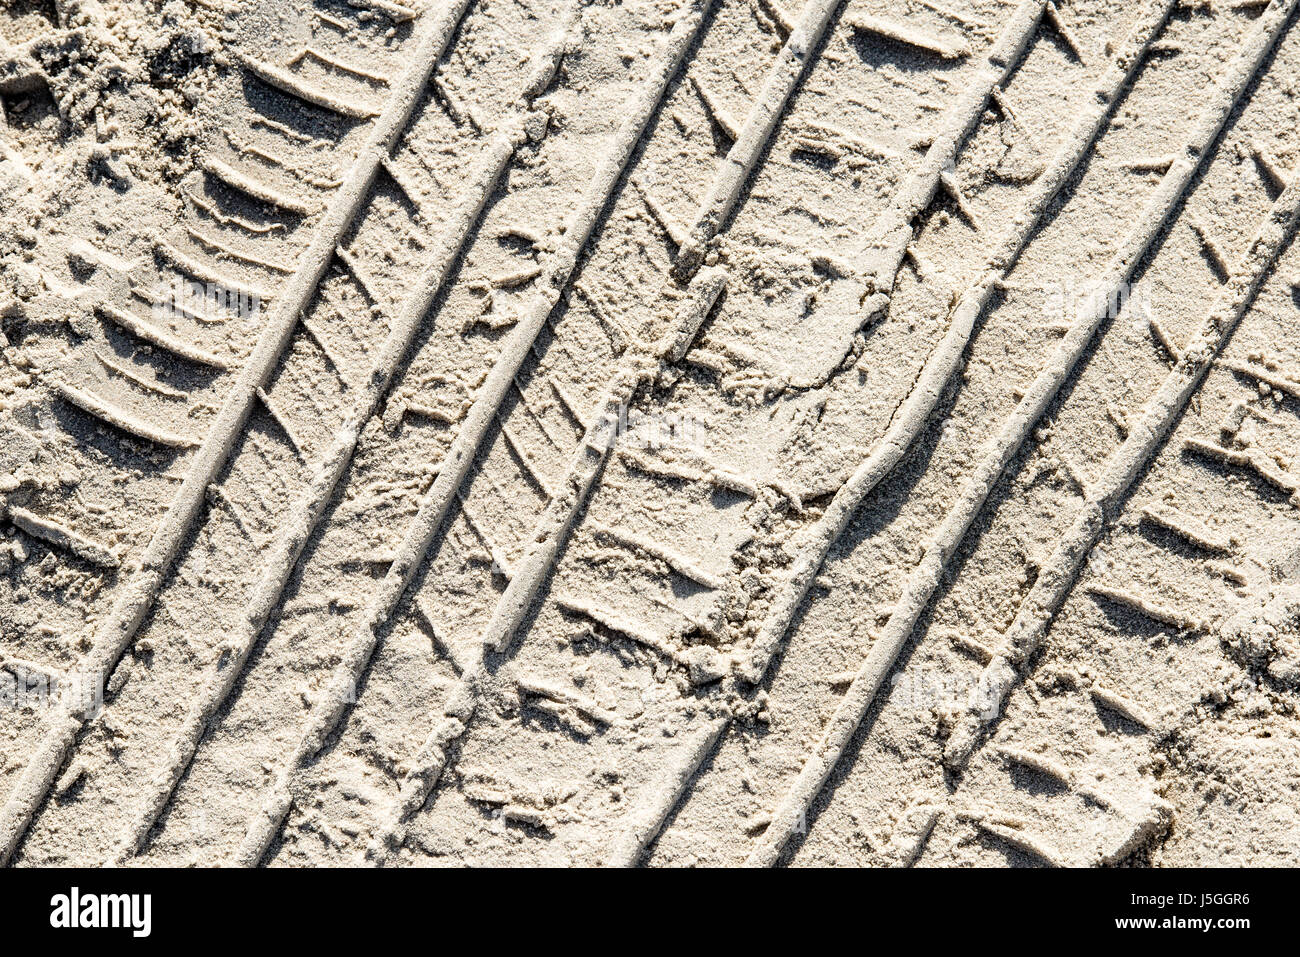 In un pneumatico di un veicolo le vie nella sabbia. La guida è consentita sulla spiaggia di Port Aransas, Texas USA, lasciando tracce della giornata di attività. Foto Stock